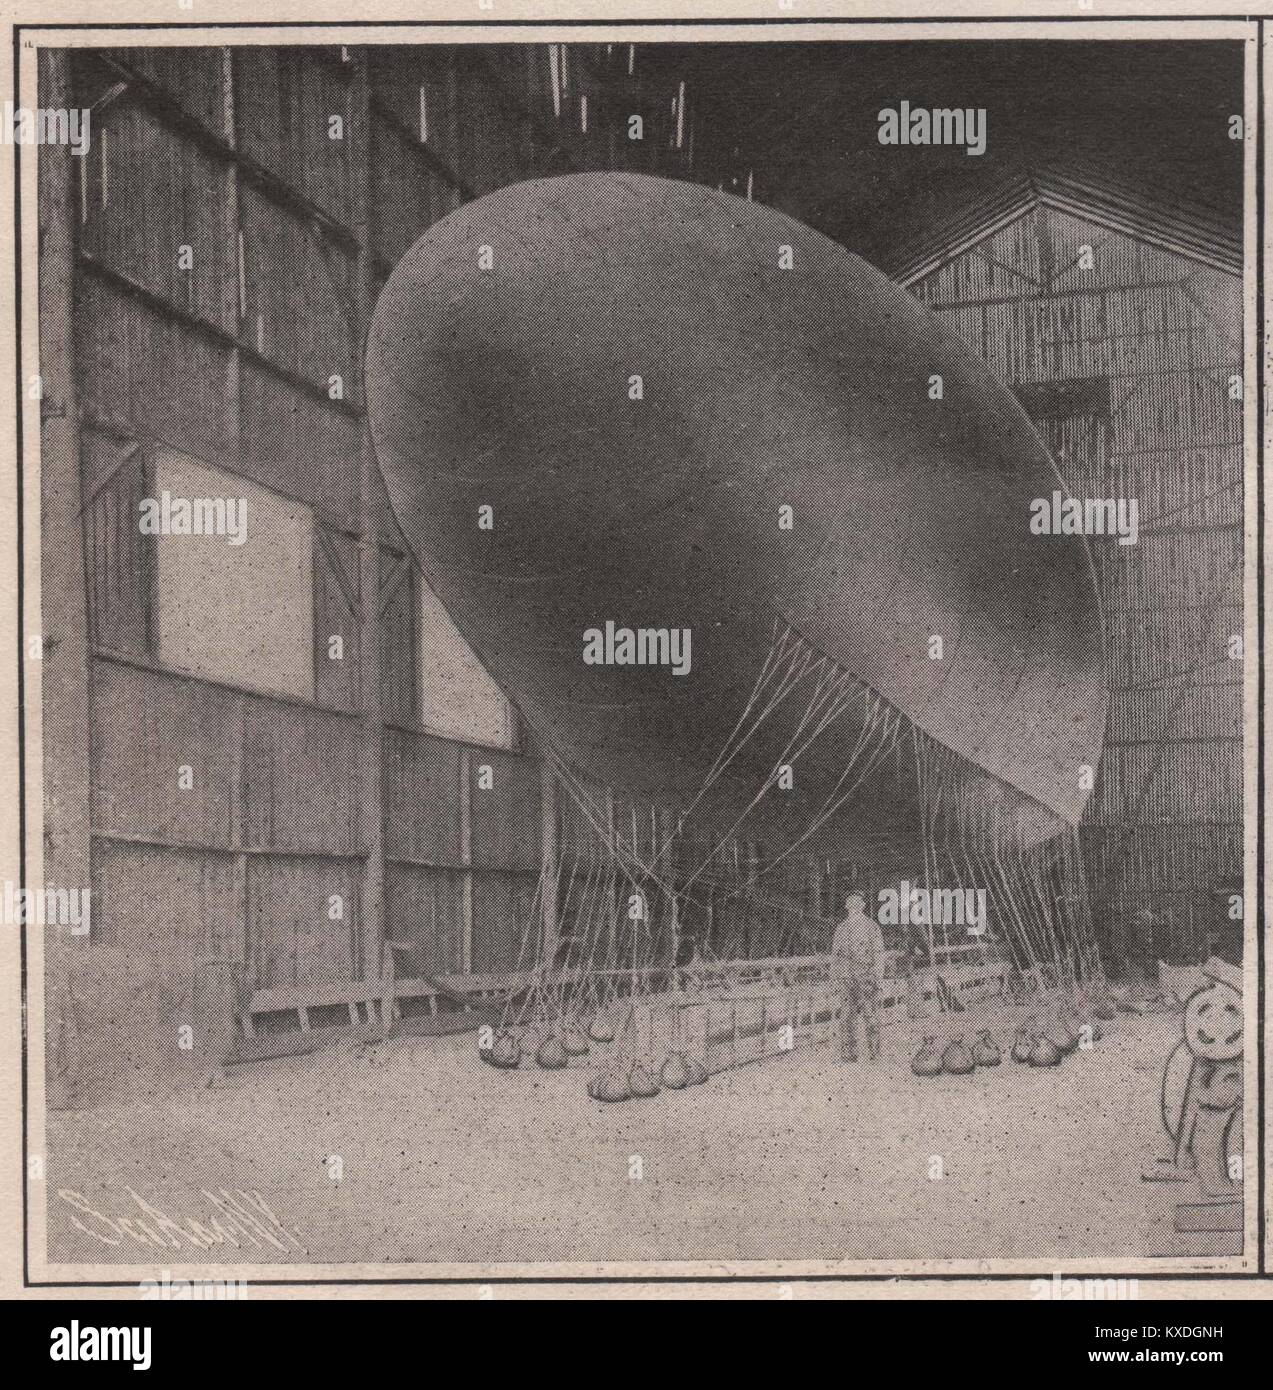 Graf de la Vaulx das Luftschiff ist 114,8 Meter lang und 23 Meter im Durchmesser. Es enthält eine Entschädigung Ballonette von 140 Cubic Yard… Stockfoto